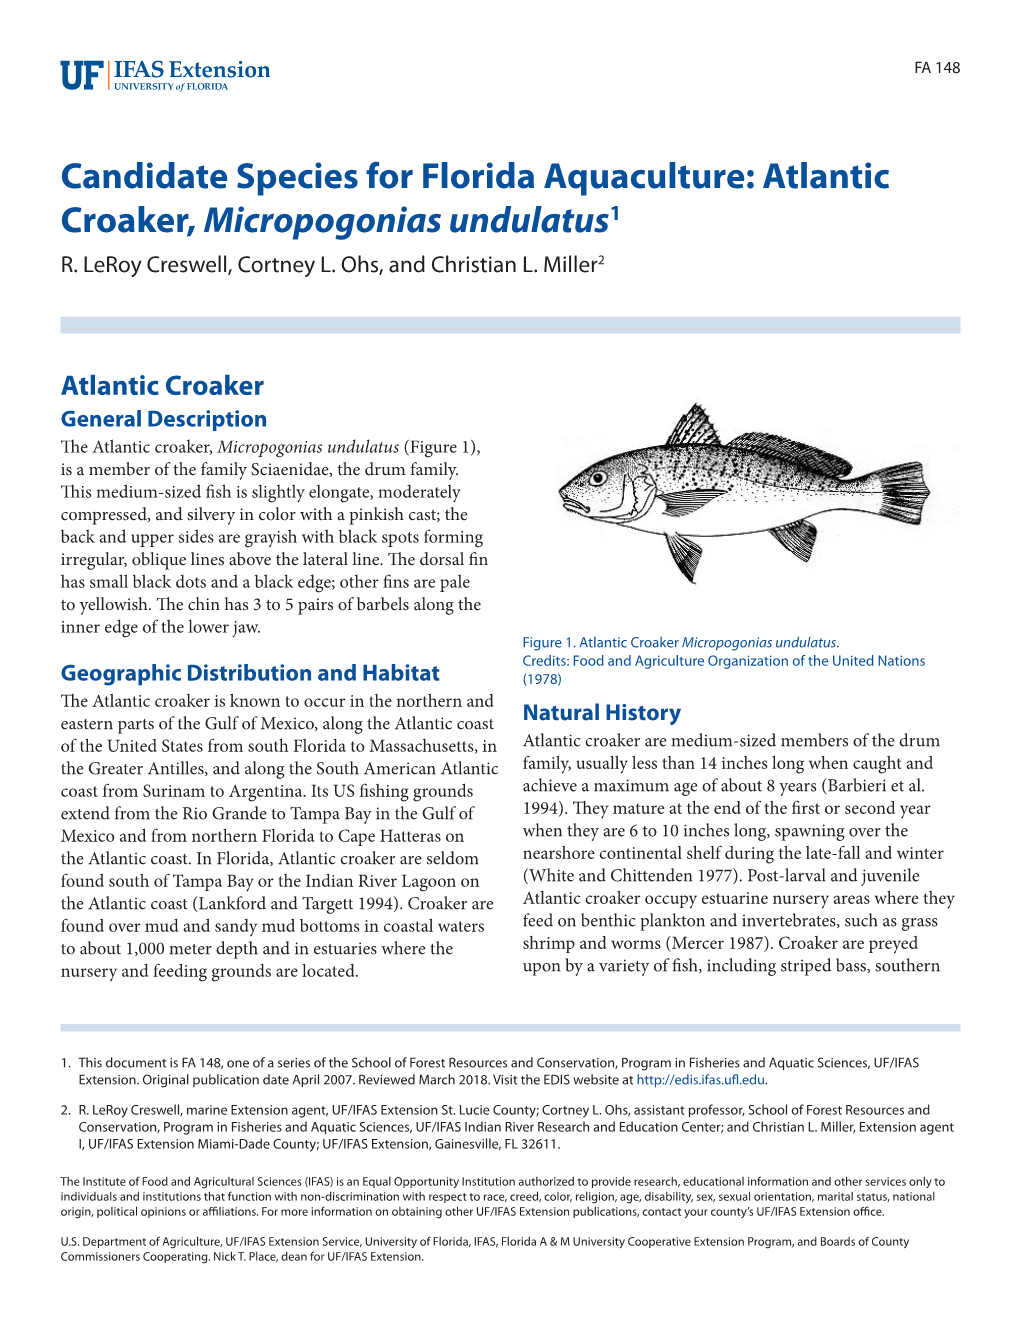 Candidate Species for Florida Aquaculture: Atlantic Croaker, Micropogonias Undulatus1 R